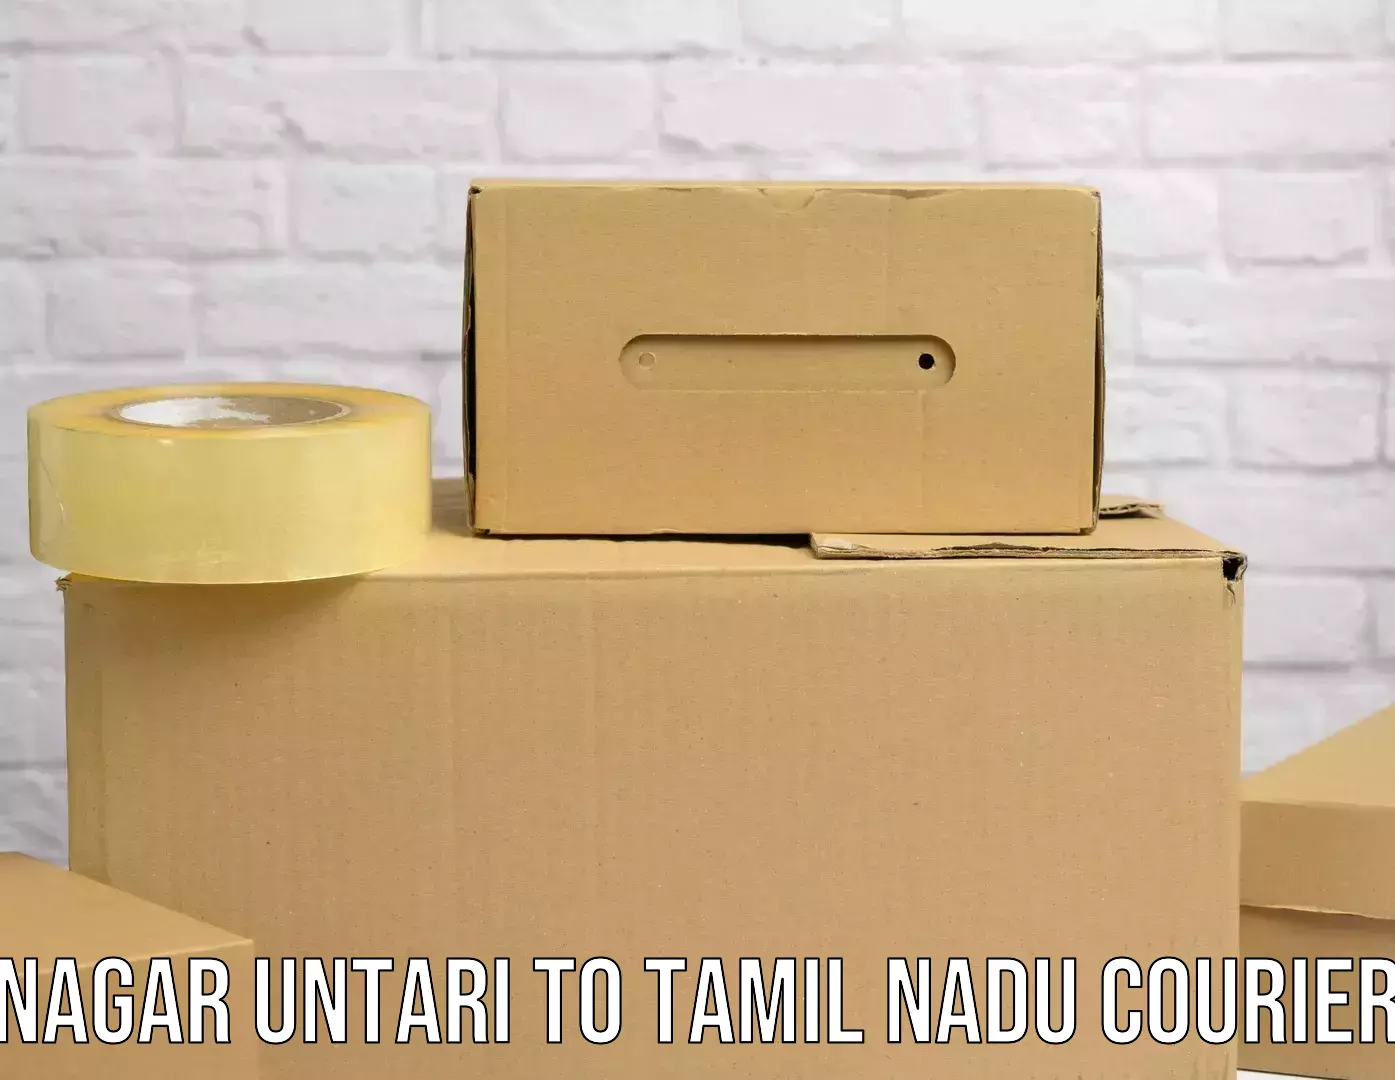 Air courier services Nagar Untari to Tamil Nadu